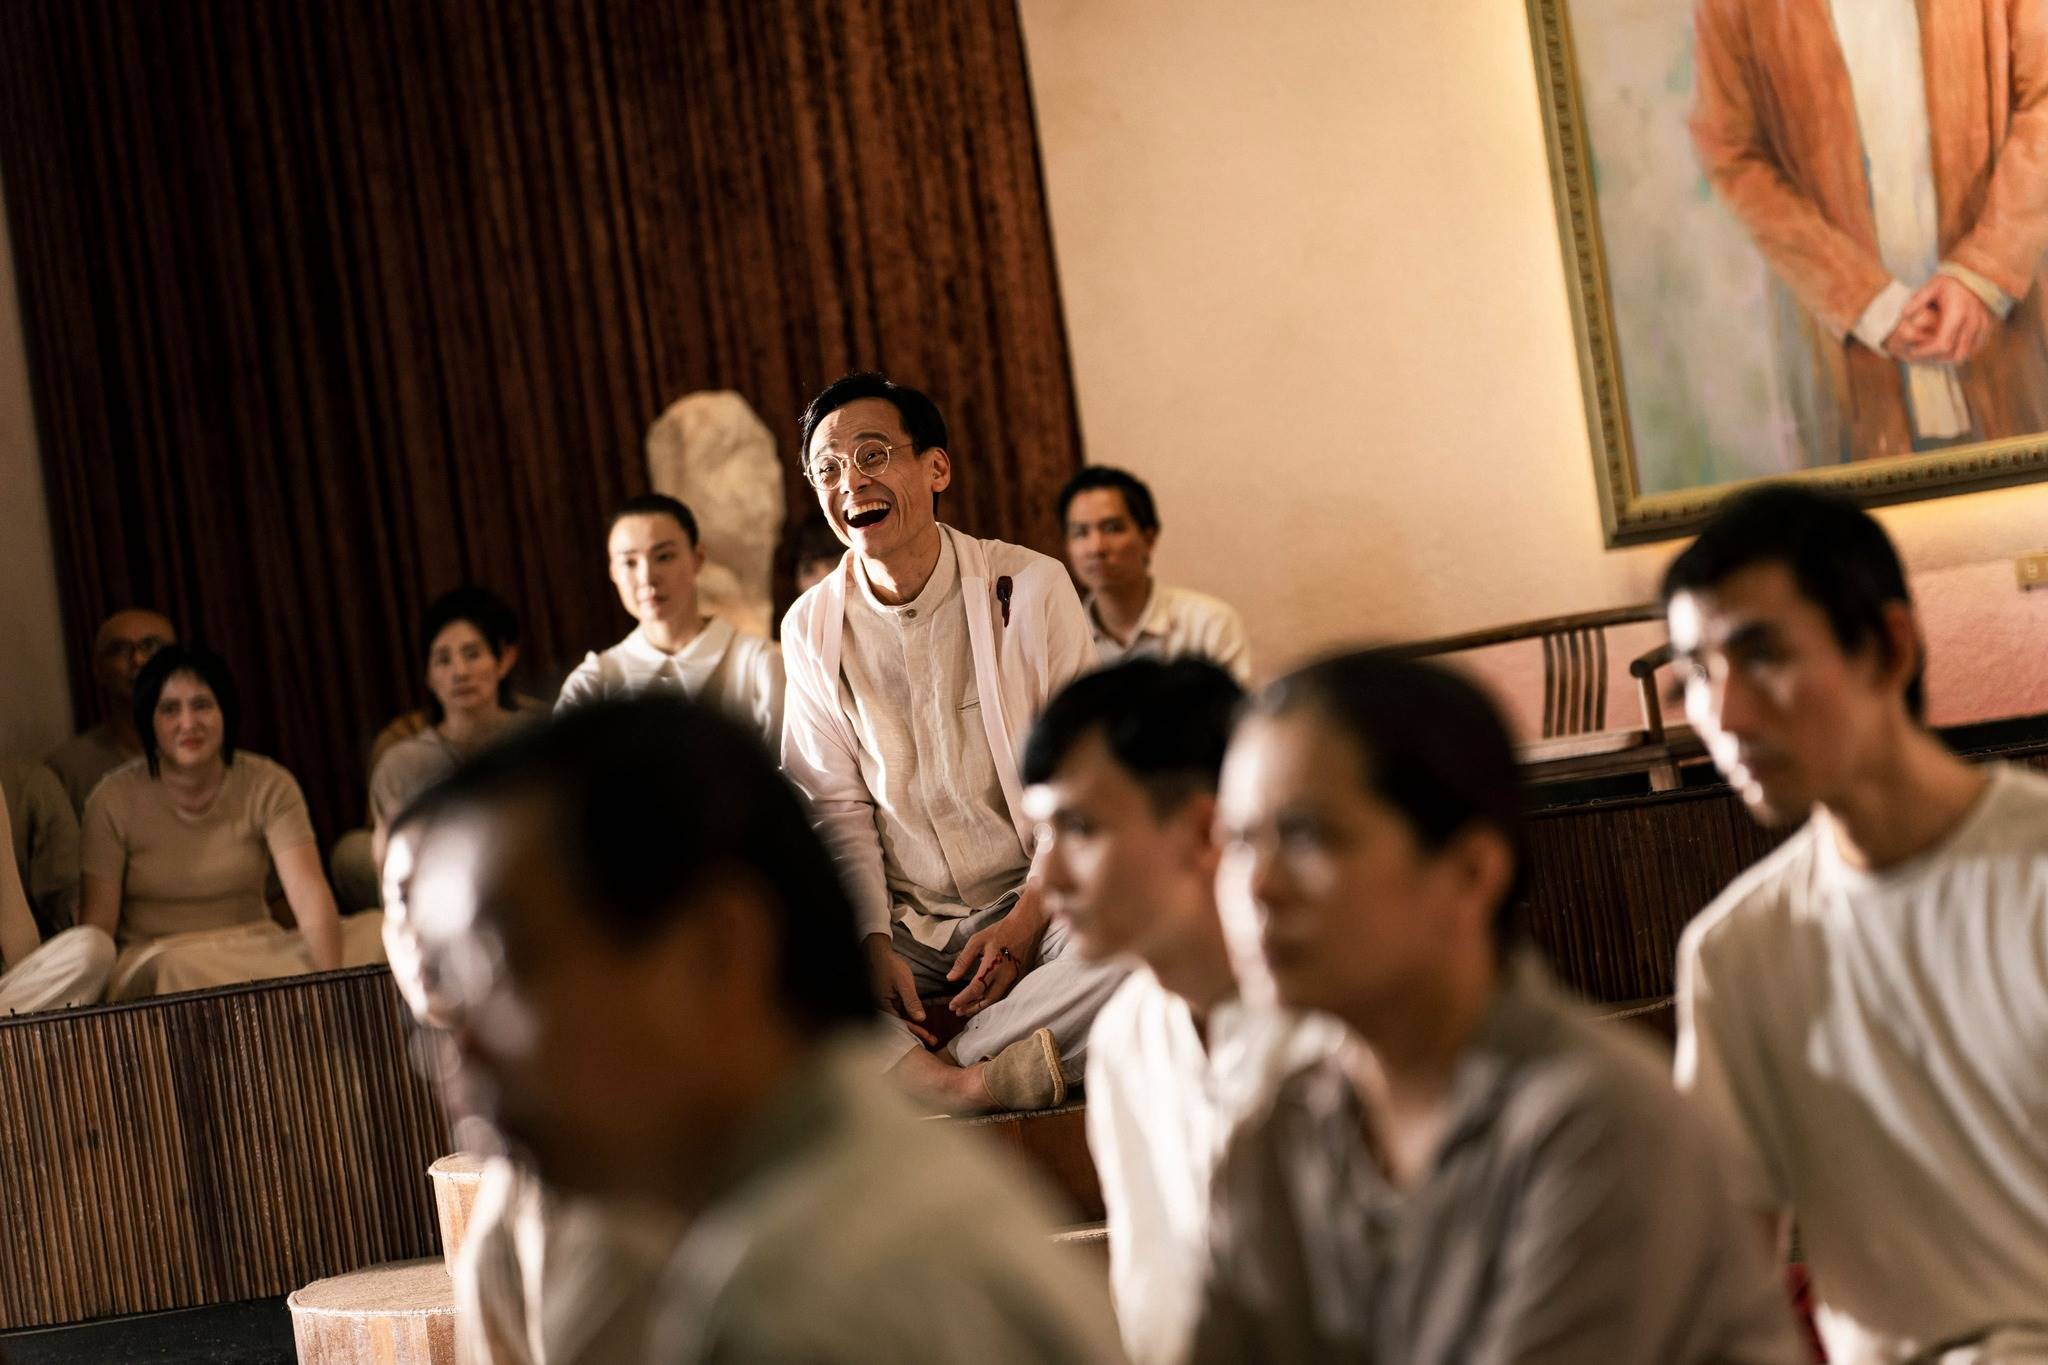 《周楚除三害》3月1日於中國上線後刪減男主角陳桂林在新心靈舍大屠殺畫面。